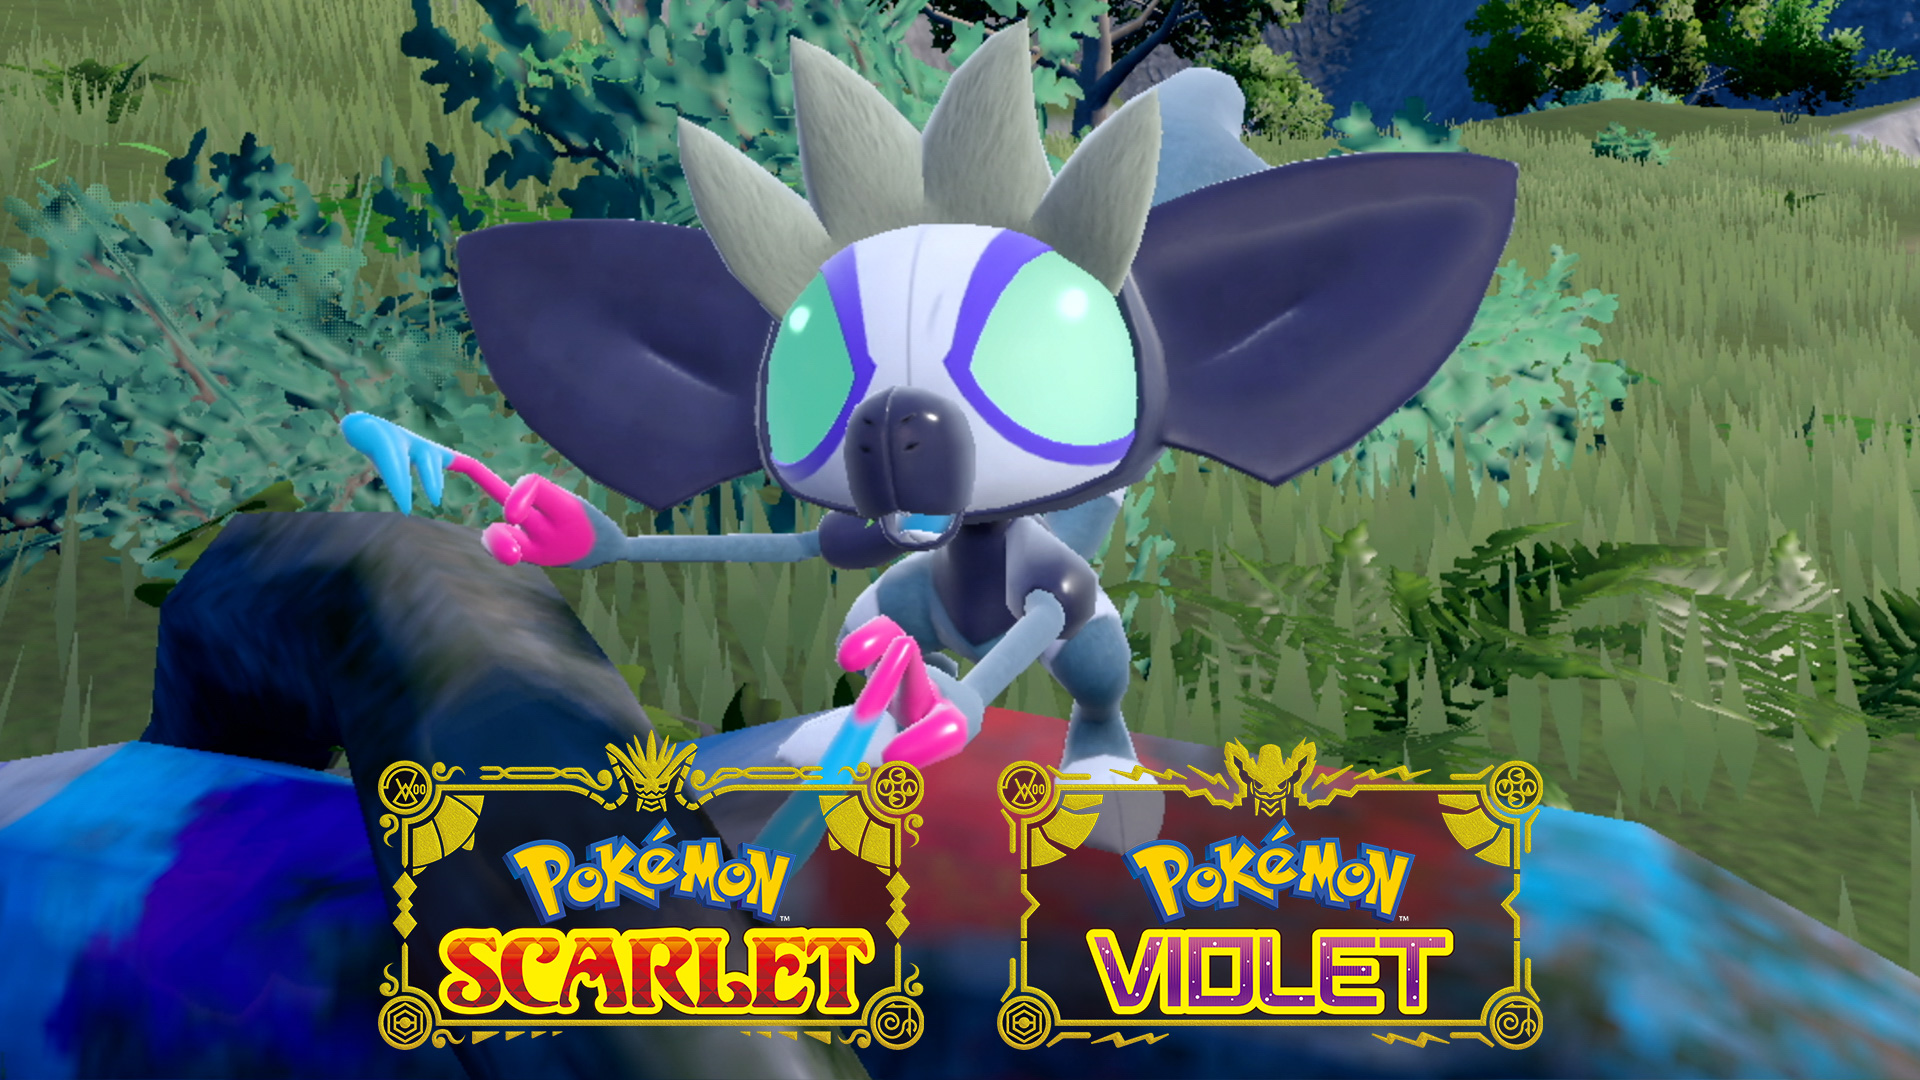 Pokémon Scarlet and Pokémon Violet  เผยข้อมูลโปเกมอนล่าสุด! เตรียมตัวพบกับ "ทากิงกูลู  (Grafaiai)" นักวาดที่สร้างสรรค์ผลงานด้วยพิษ !? 